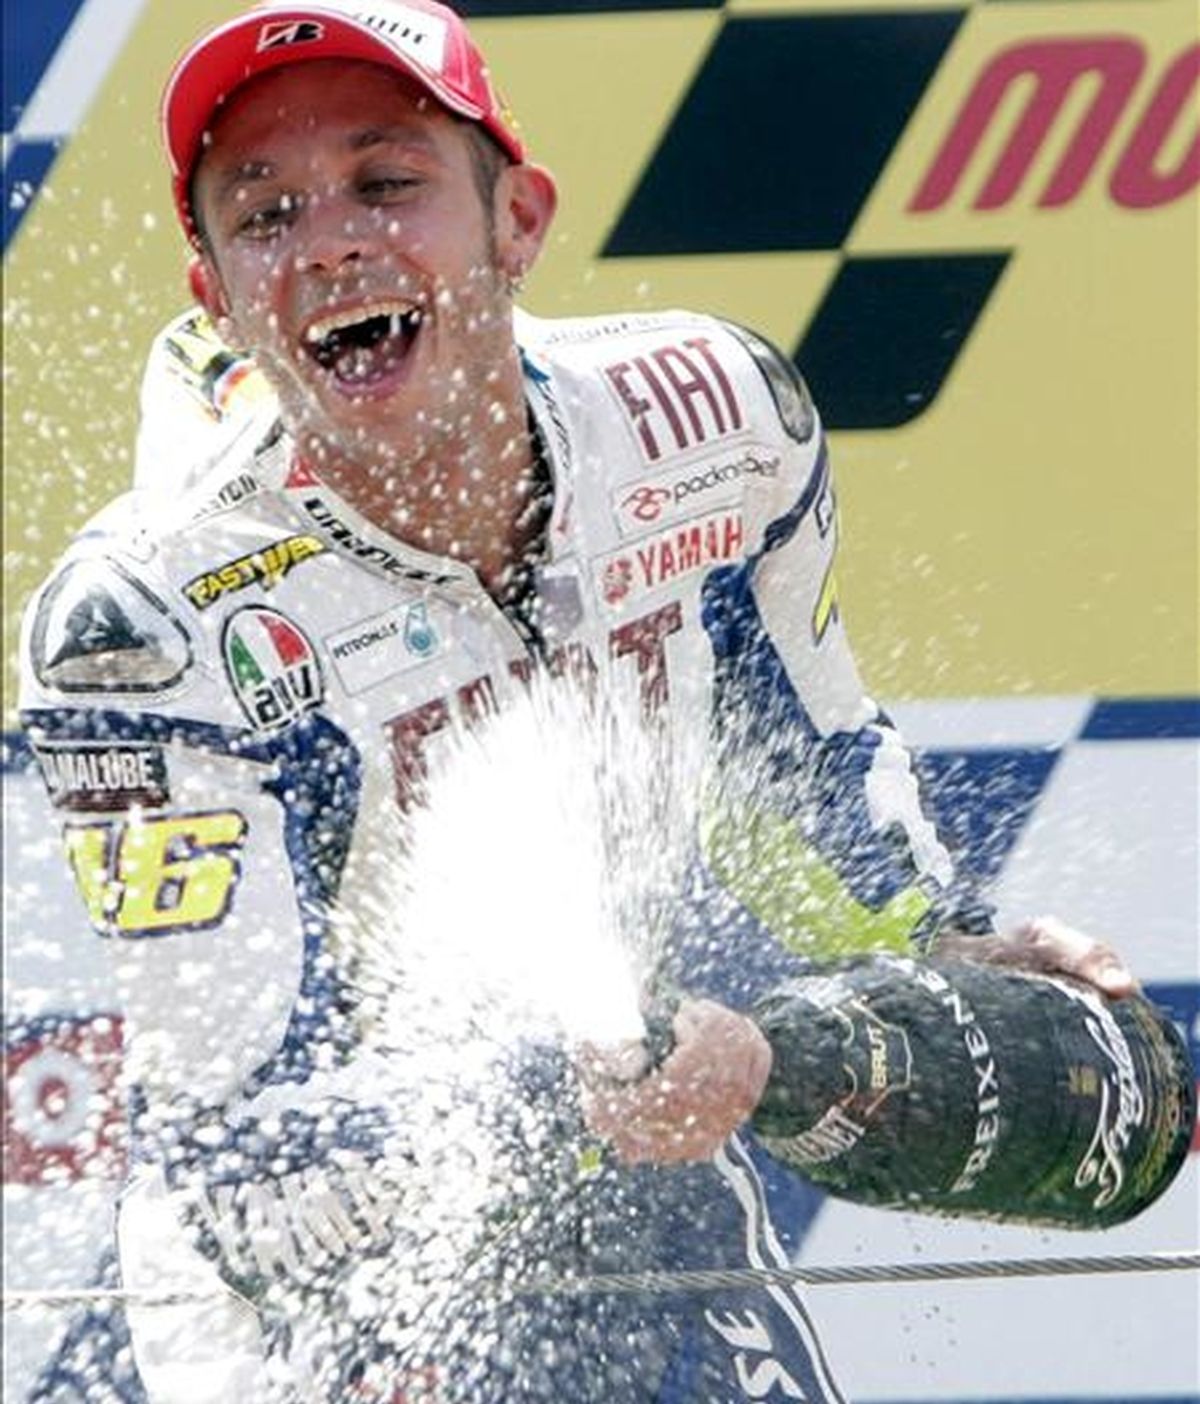 El piloto italiano de MotoGP Valentino Rossi del equipo FIAT Yamaha celebra en el podio su victoria en el circuito de Cataluña tras el Gran Premio de Cataluña de motociclismo. EFE/Archivo